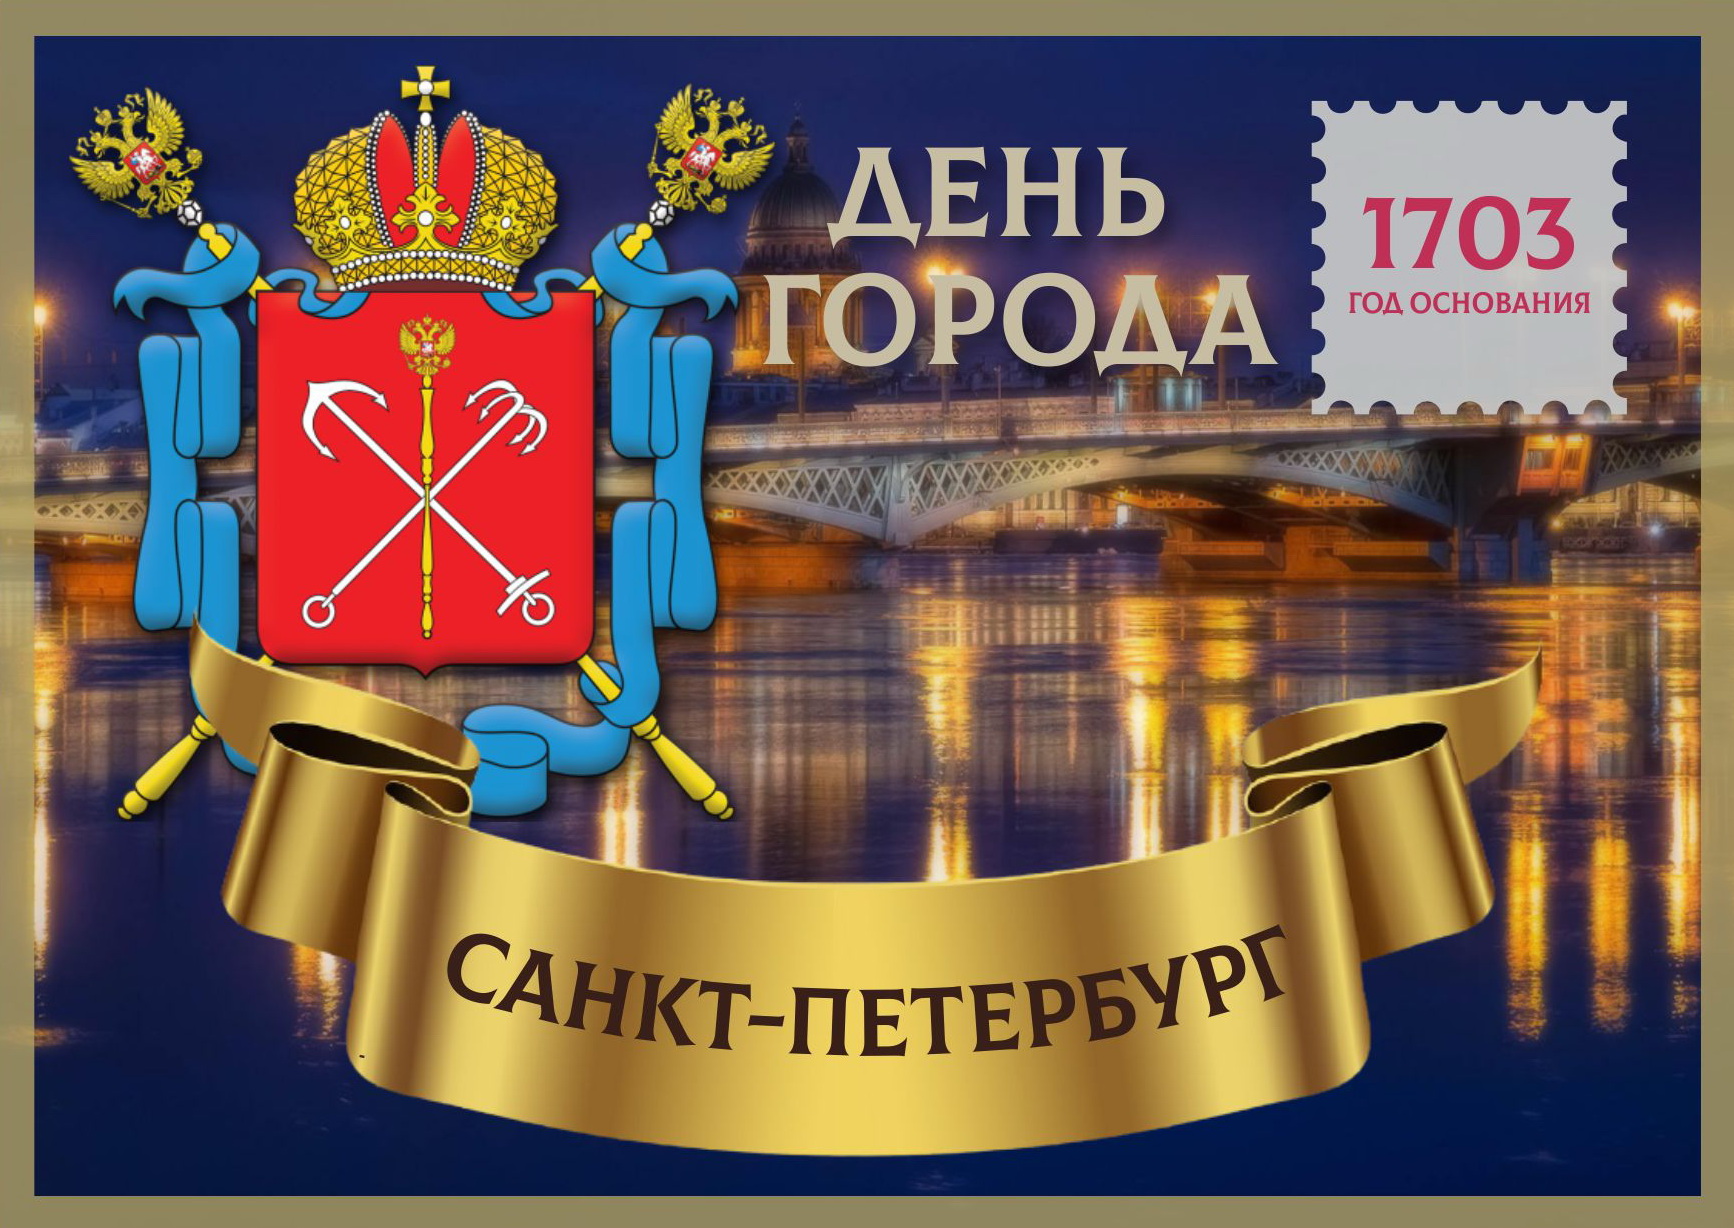 20 мая спб. Санкт-Петербург днем. Поздравление с днем города СПБ. День города Санкт-Петербурга. С днем города Санкт-Петербург открытки.